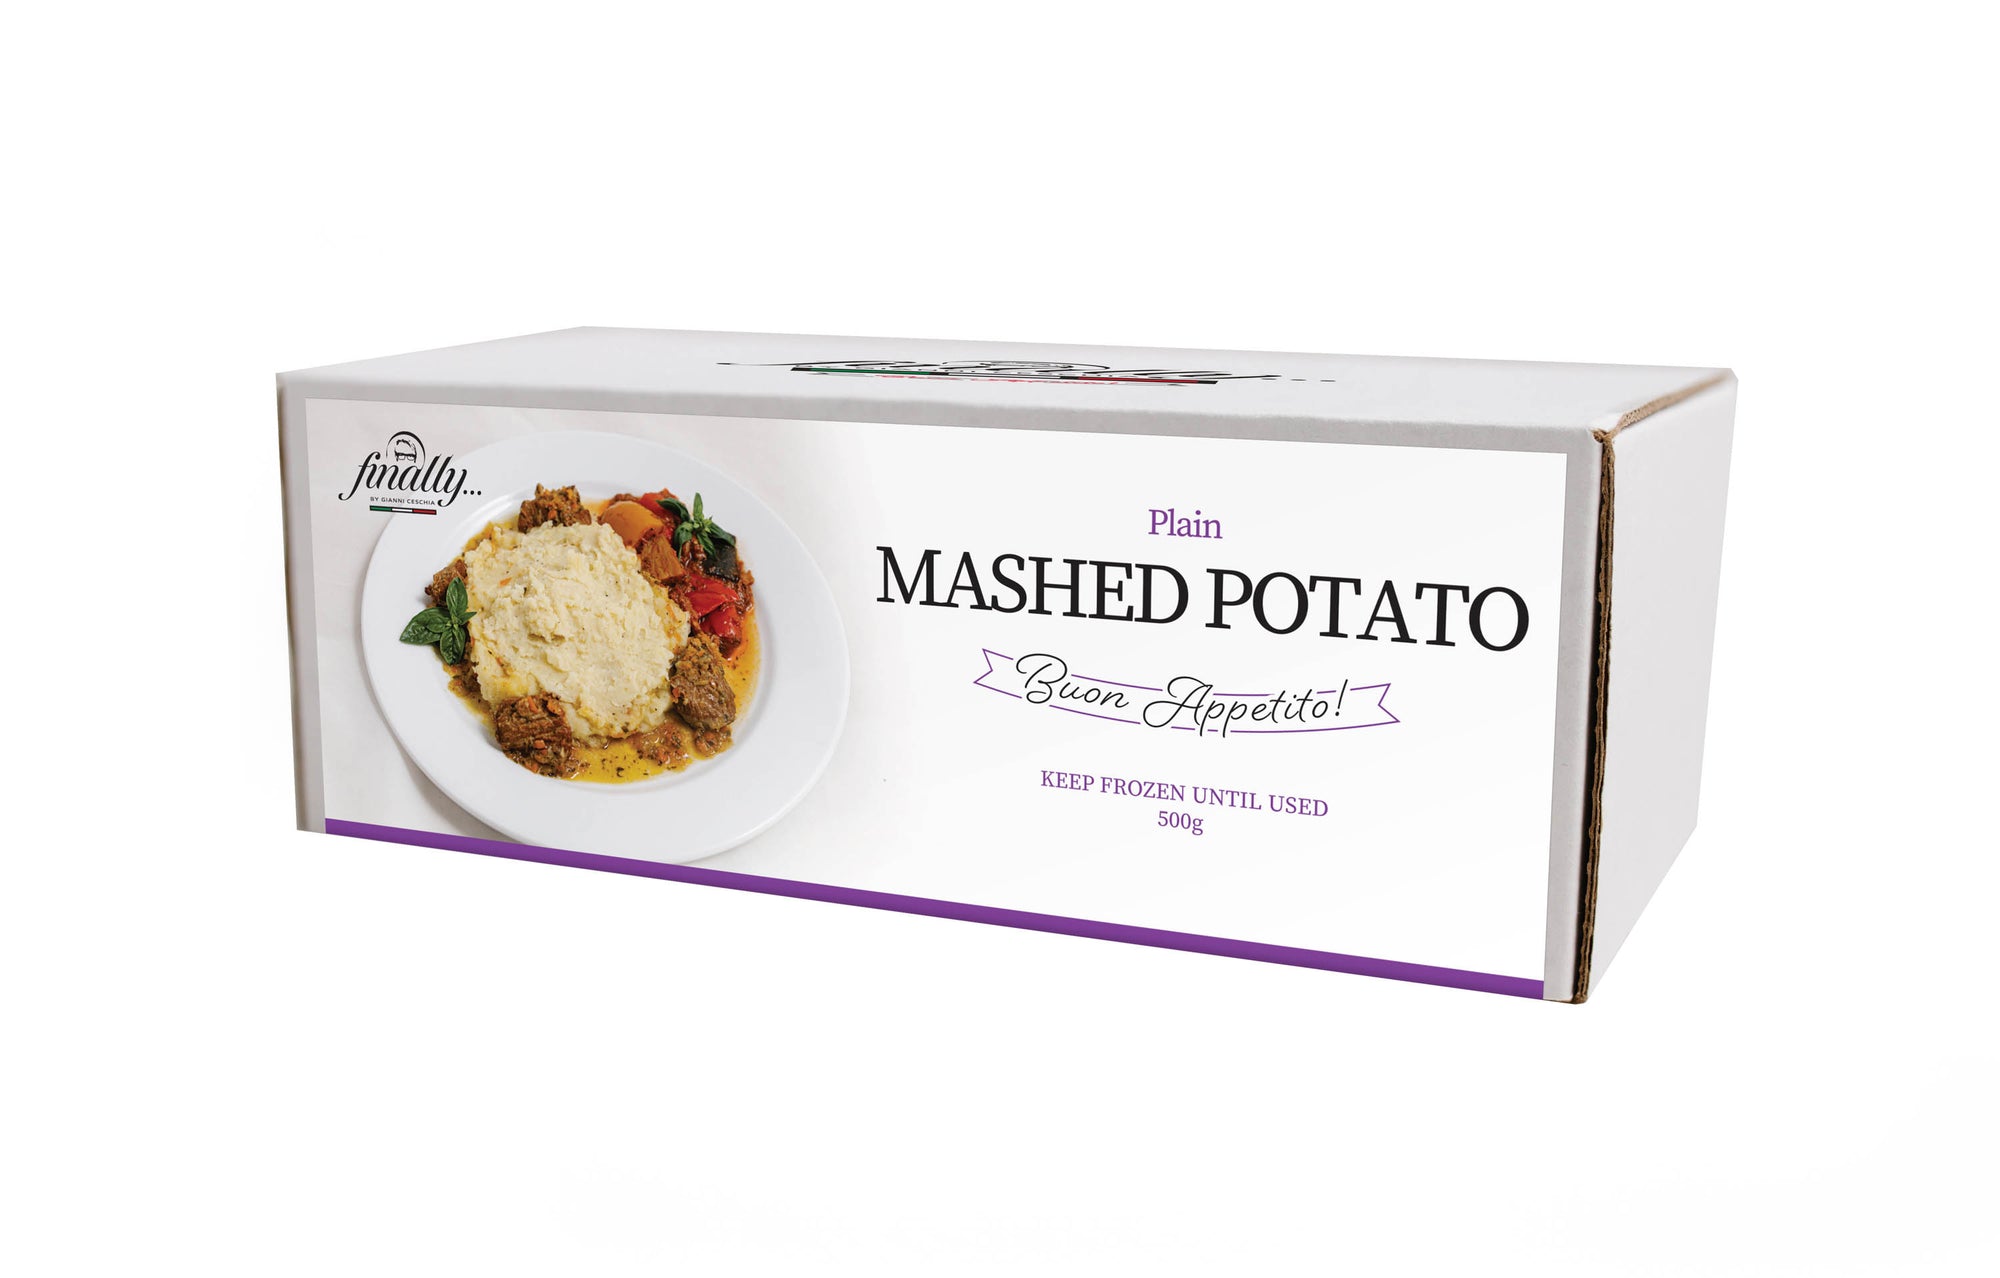 Mashed Potato - Plain on a plate